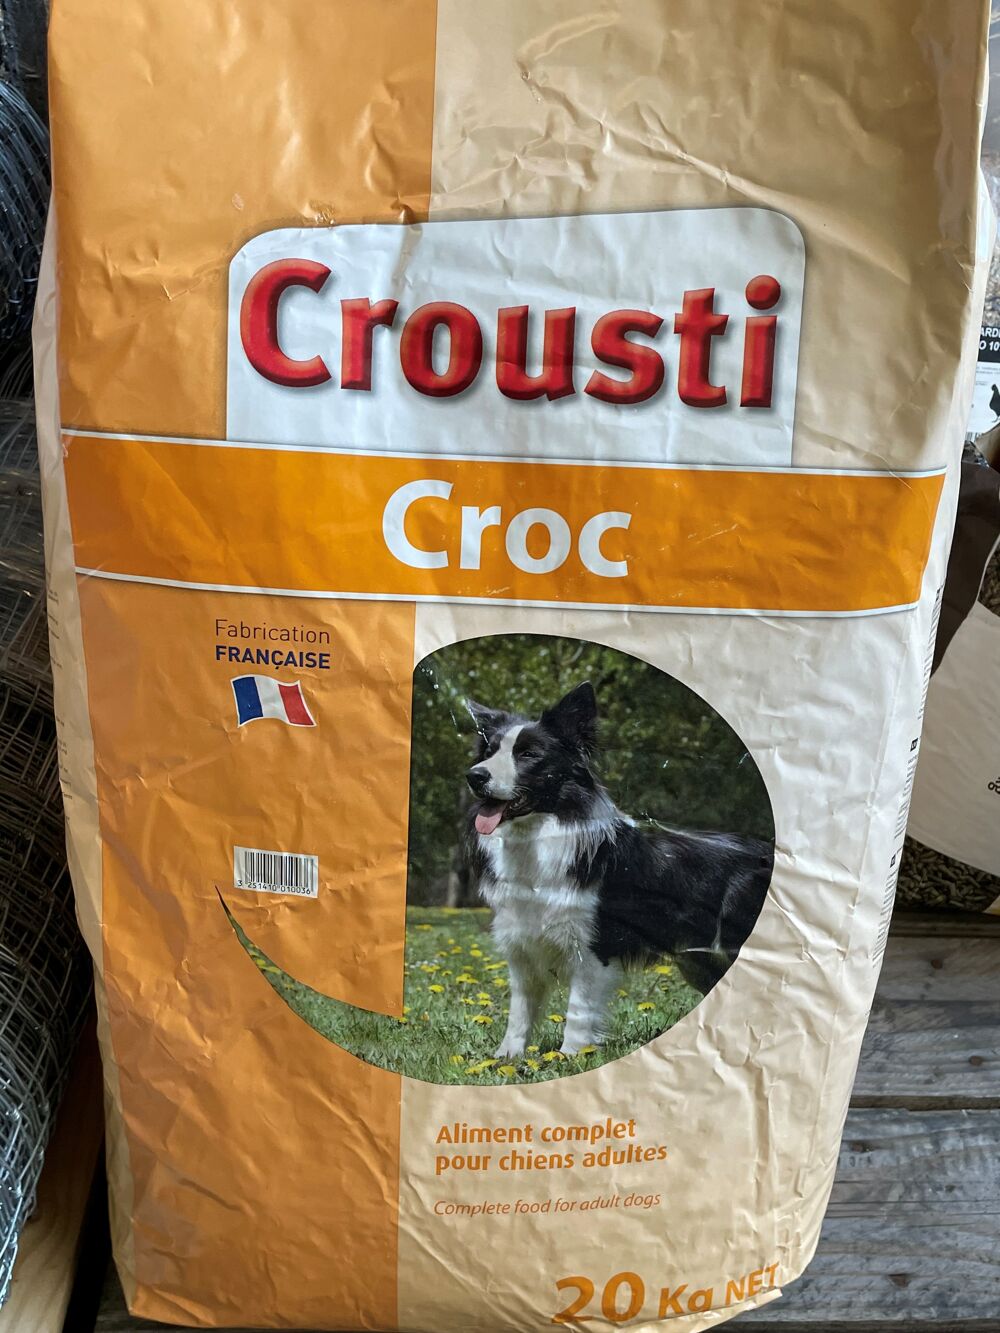   Croquettes pour chien CROUSTICROC 20kg 